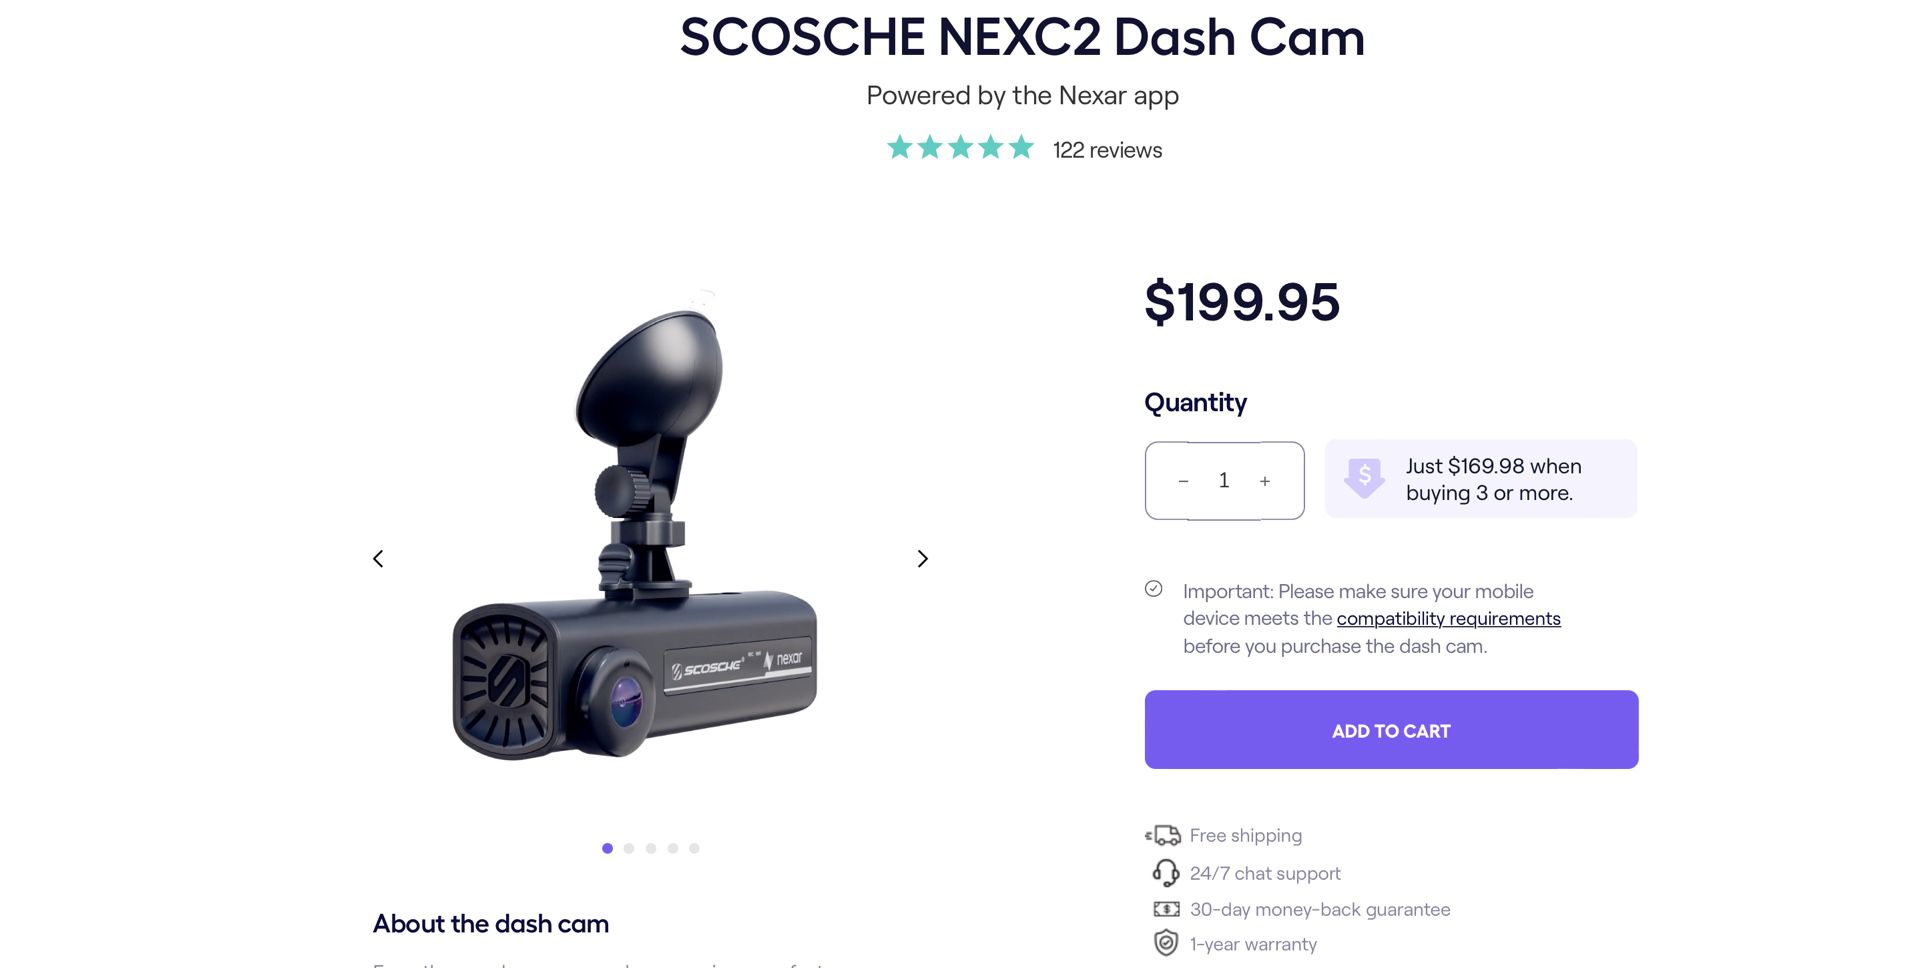 SCOSCHE NEXC2 Dash Cam